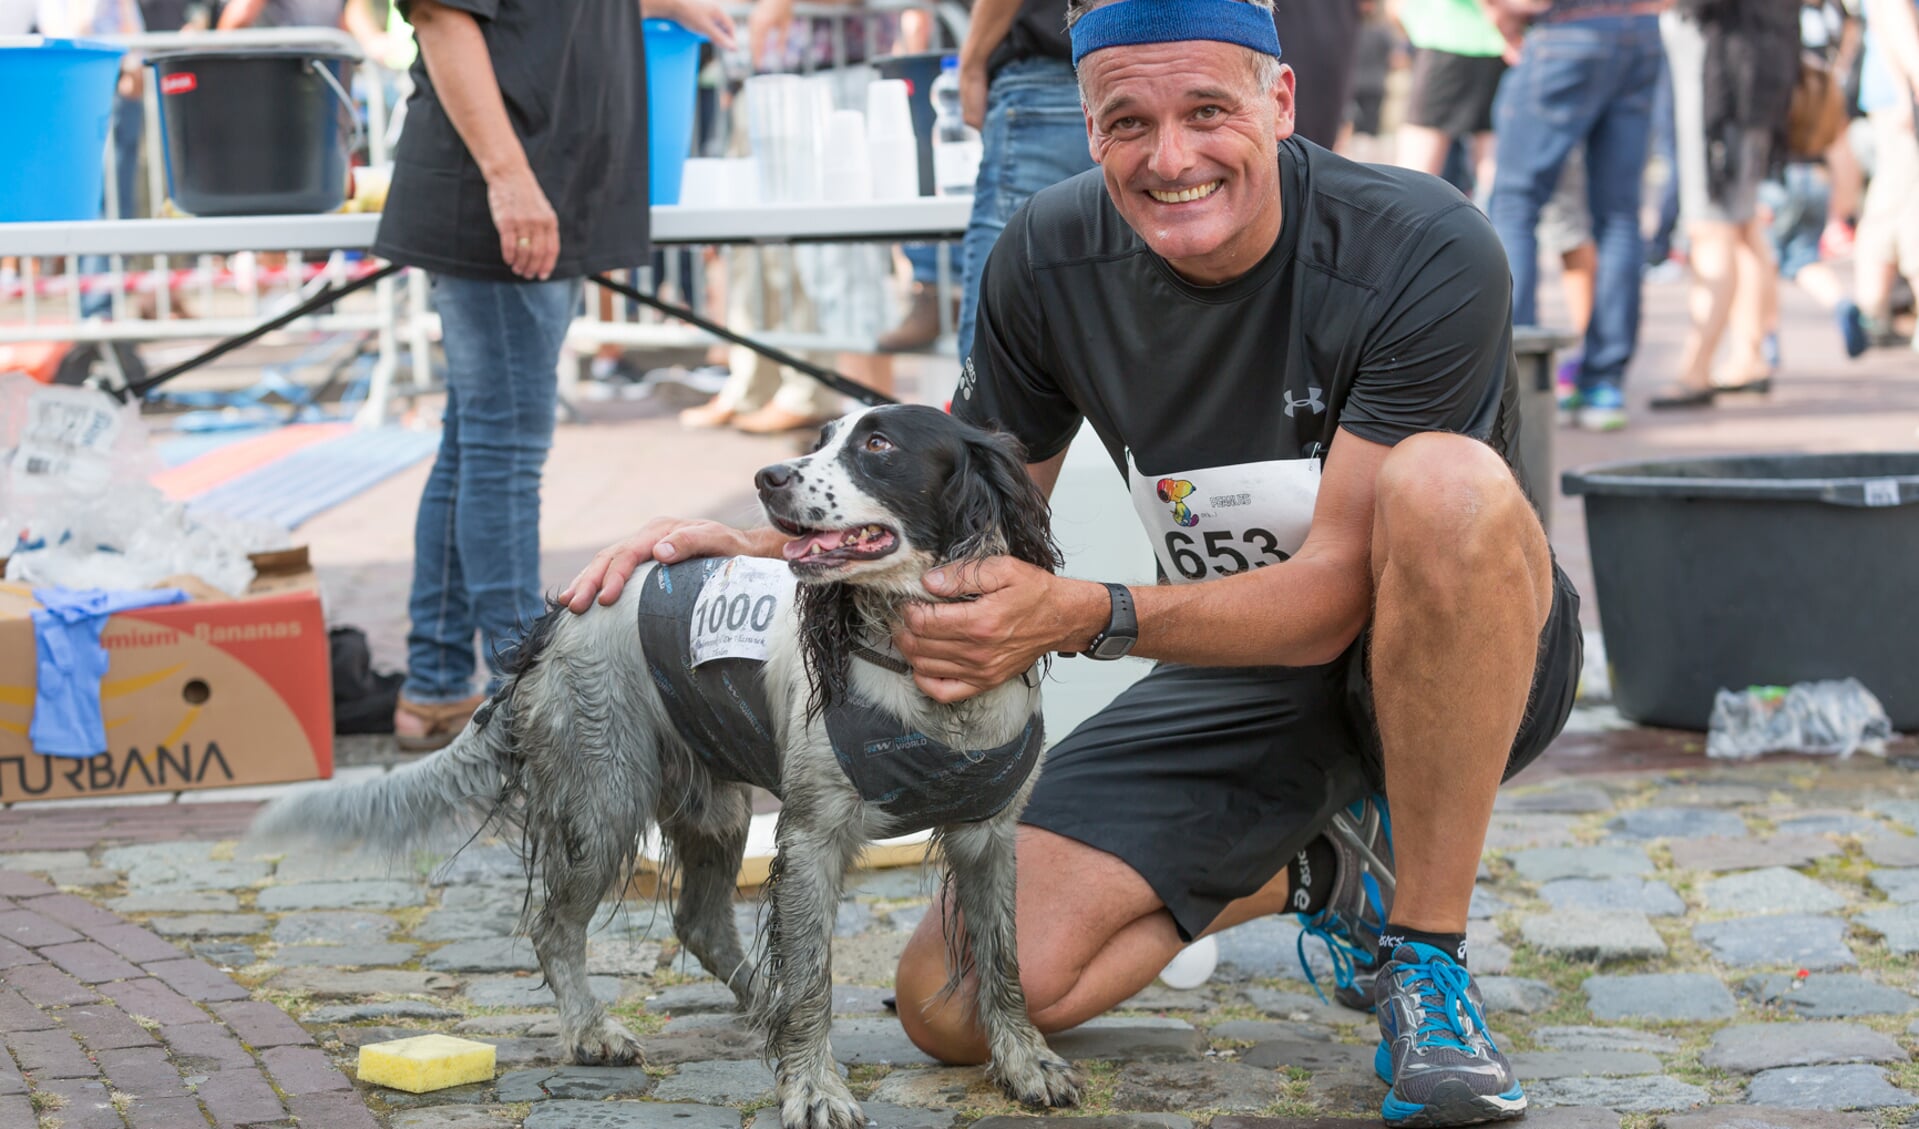 De halve marathon werd zelfs een keer gelopen door een hond. FOTO IMAN FASE